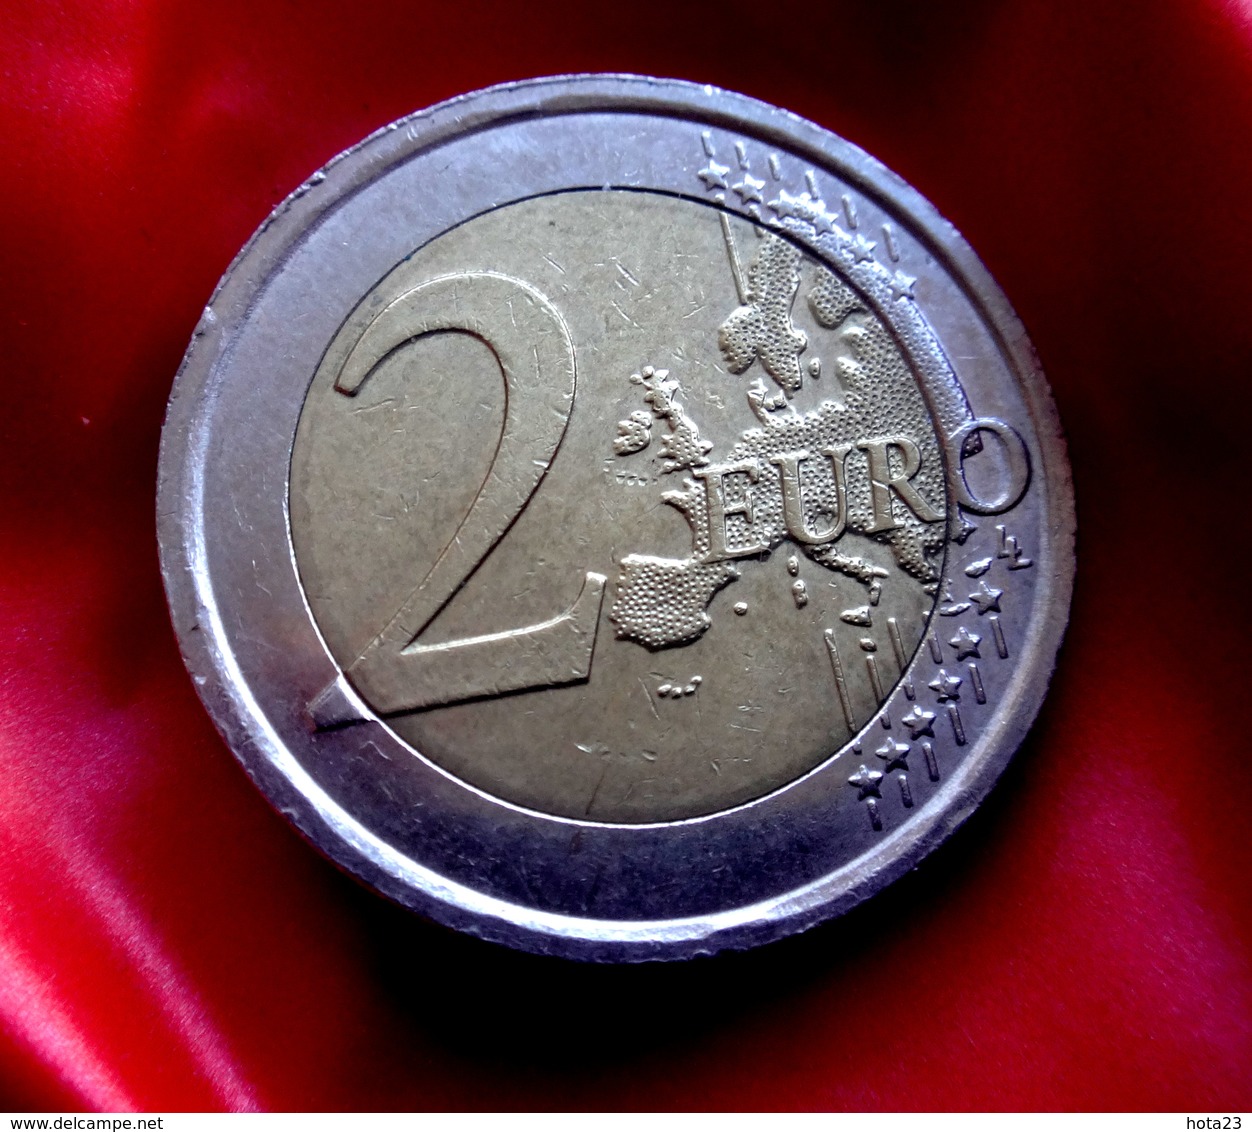 ITALIA 2014 2 EURO Commemorativo 200° ANNIVERSARIO FONDAZIONE ARMA CARABINIERI  Coin  CIRCULATED - Italie